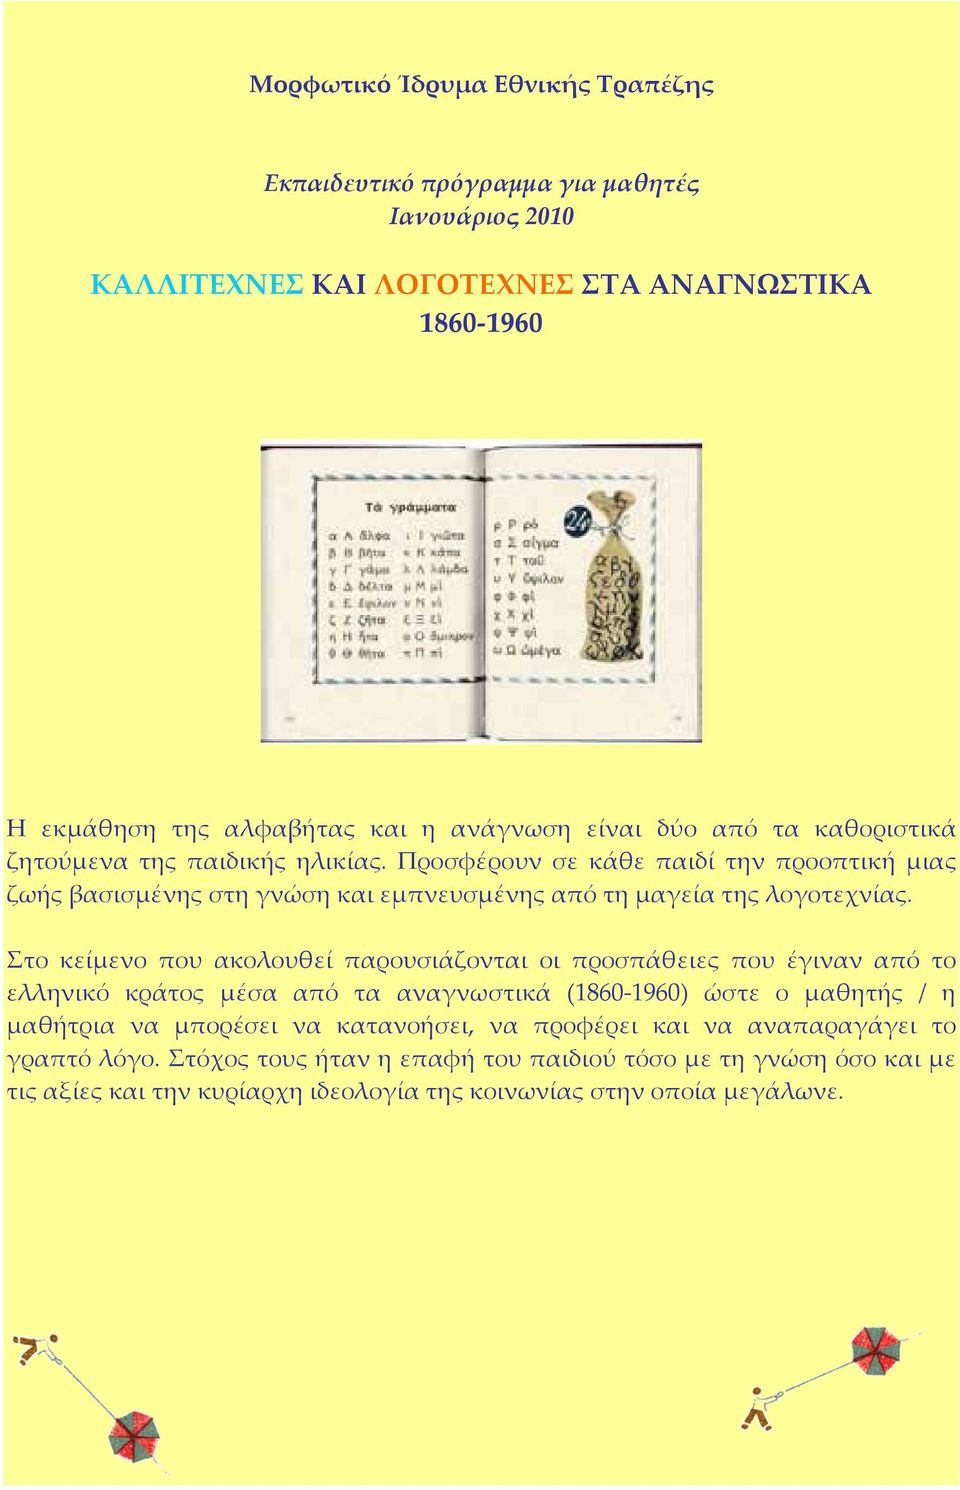 Στο κείμενο που ακολουθεί παρουσιάζονται οι προσπάθειες που έγιναν από το ελληνικό κράτος μέσα από τα αναγνωστικά (1860-1960) ώστε ο μαθητής / η μαθήτρια να μπορέσει να κατανοήσει,